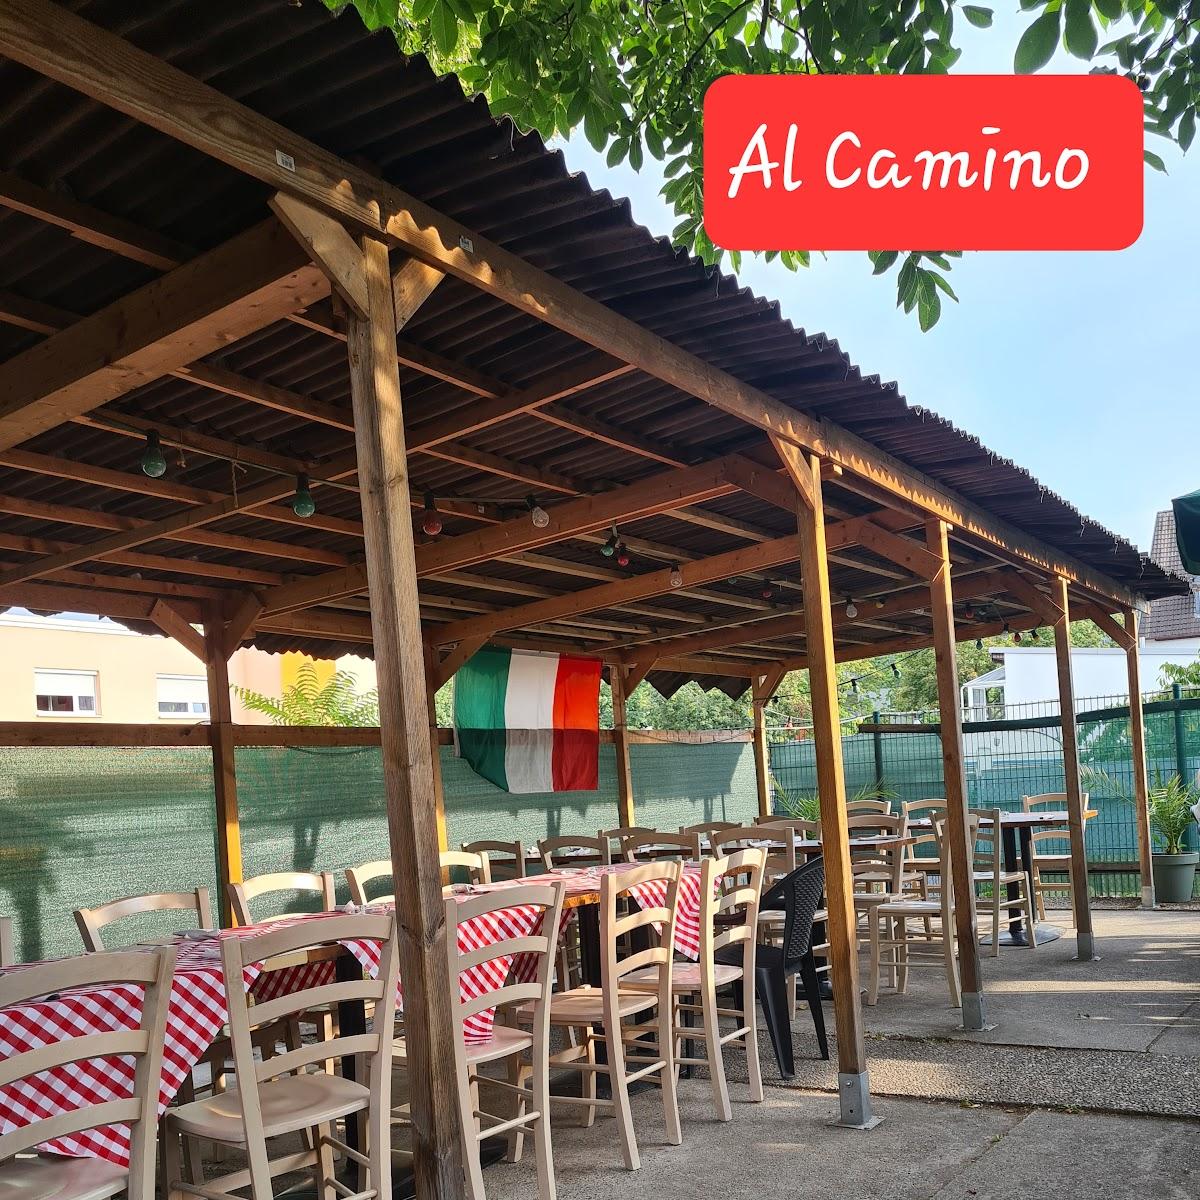 Restaurant "Al Camino" in Frankfurt am Main